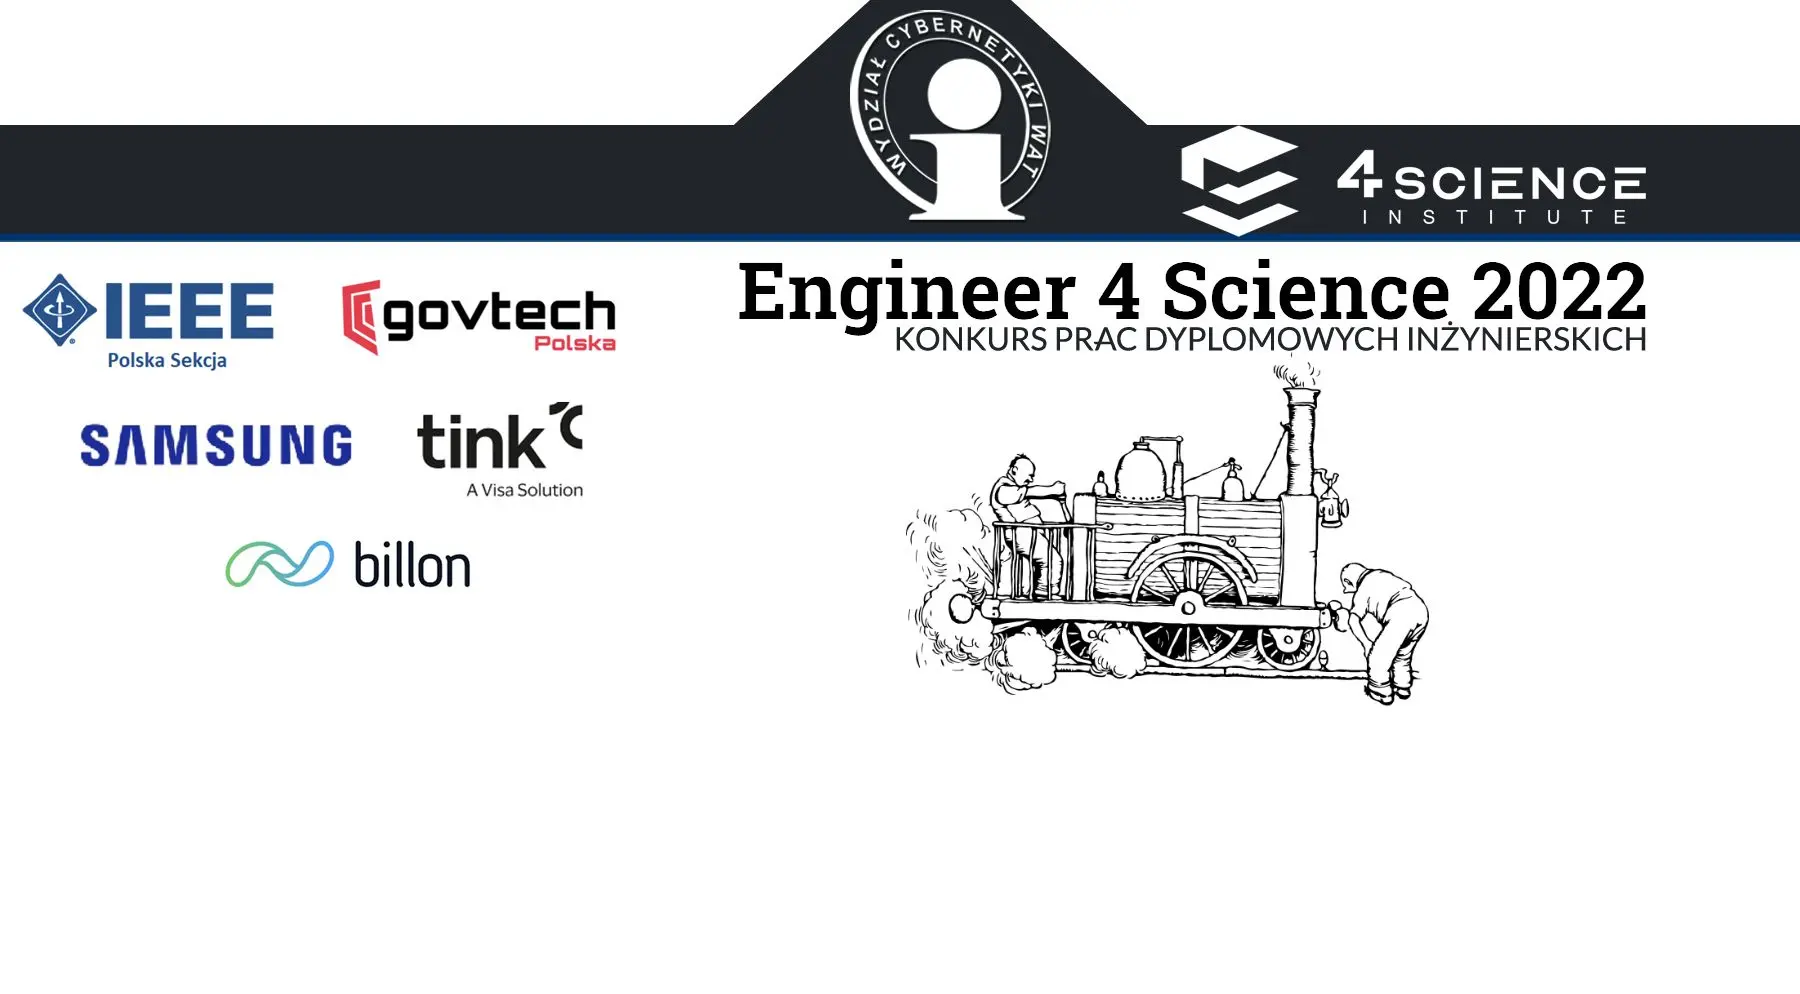 Wyróżnienie pracy inżynierskiej w konkursie Engineer 4 Science 2022 - obrazek